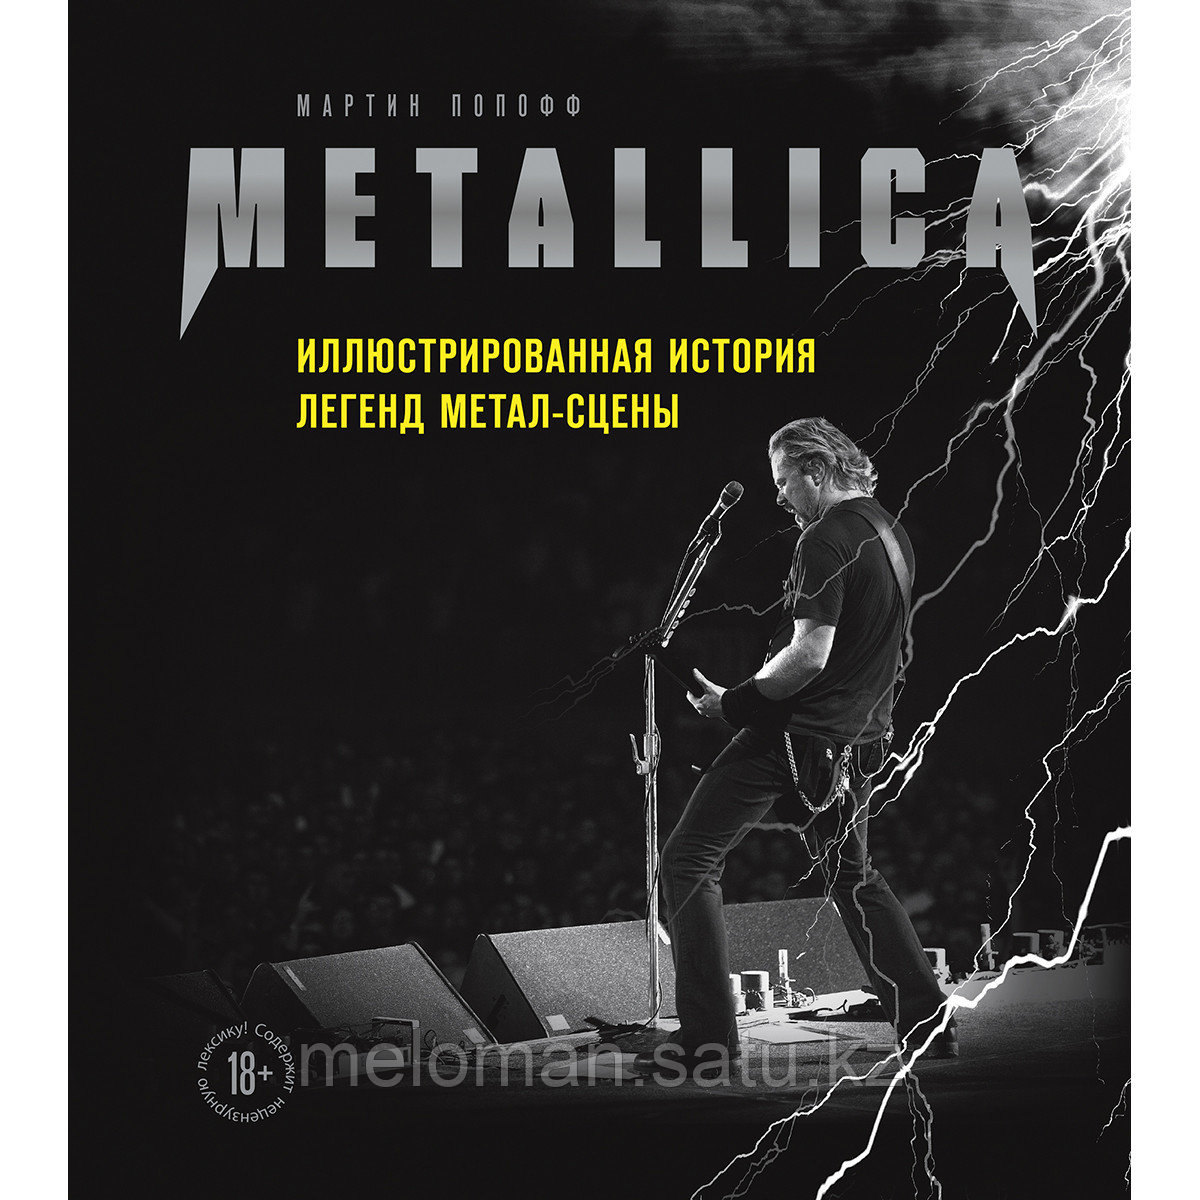 Попофф М.: Metallica. Иллюстрированная история легенд метал-сцены